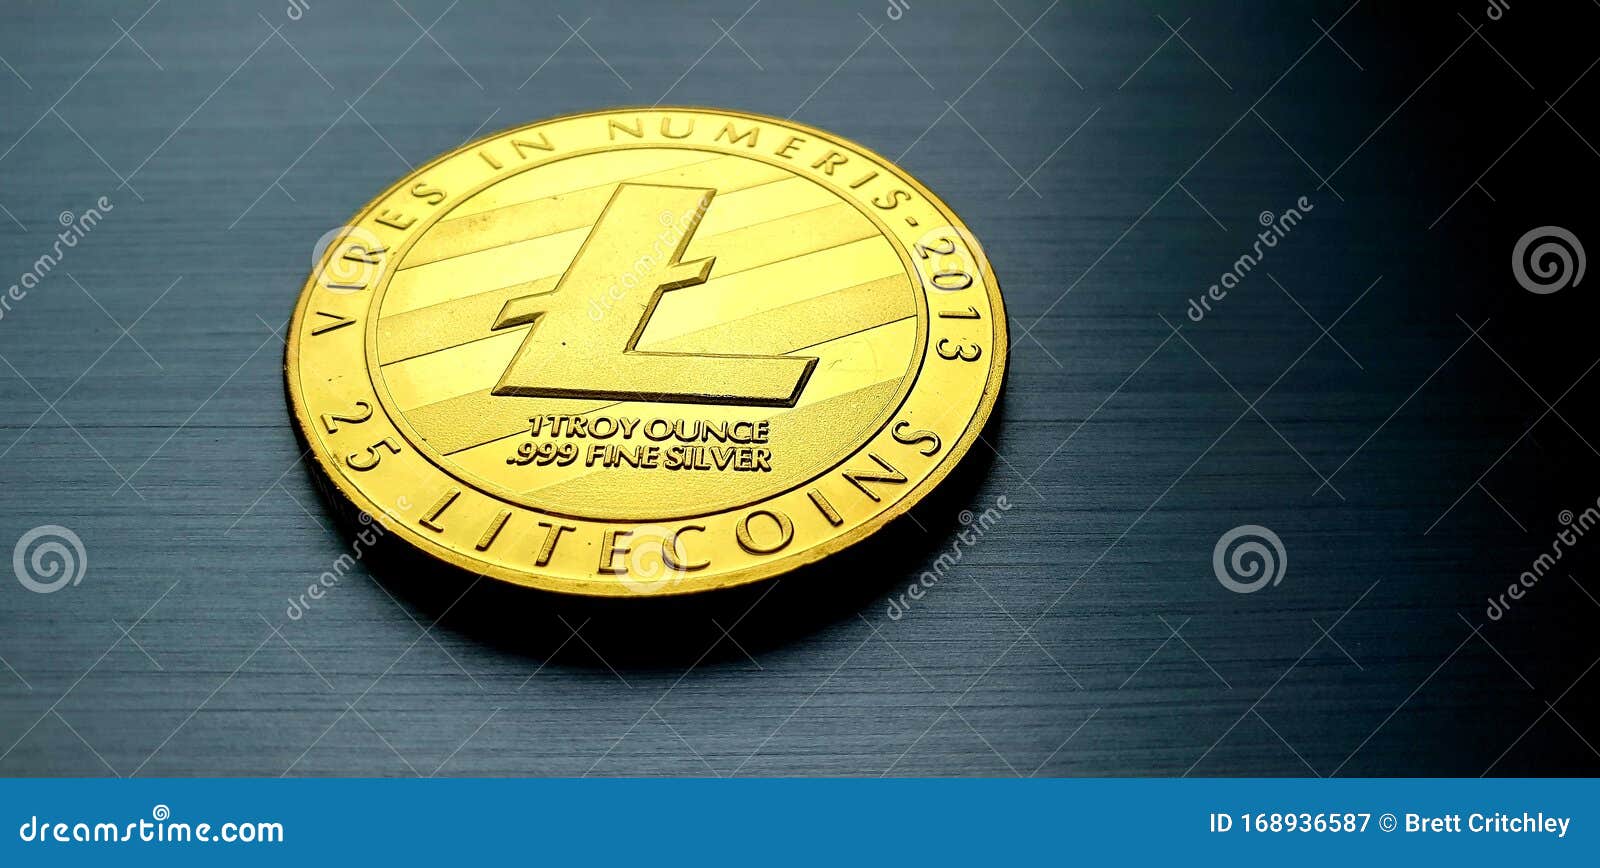 gold bitcoin litecoin coin